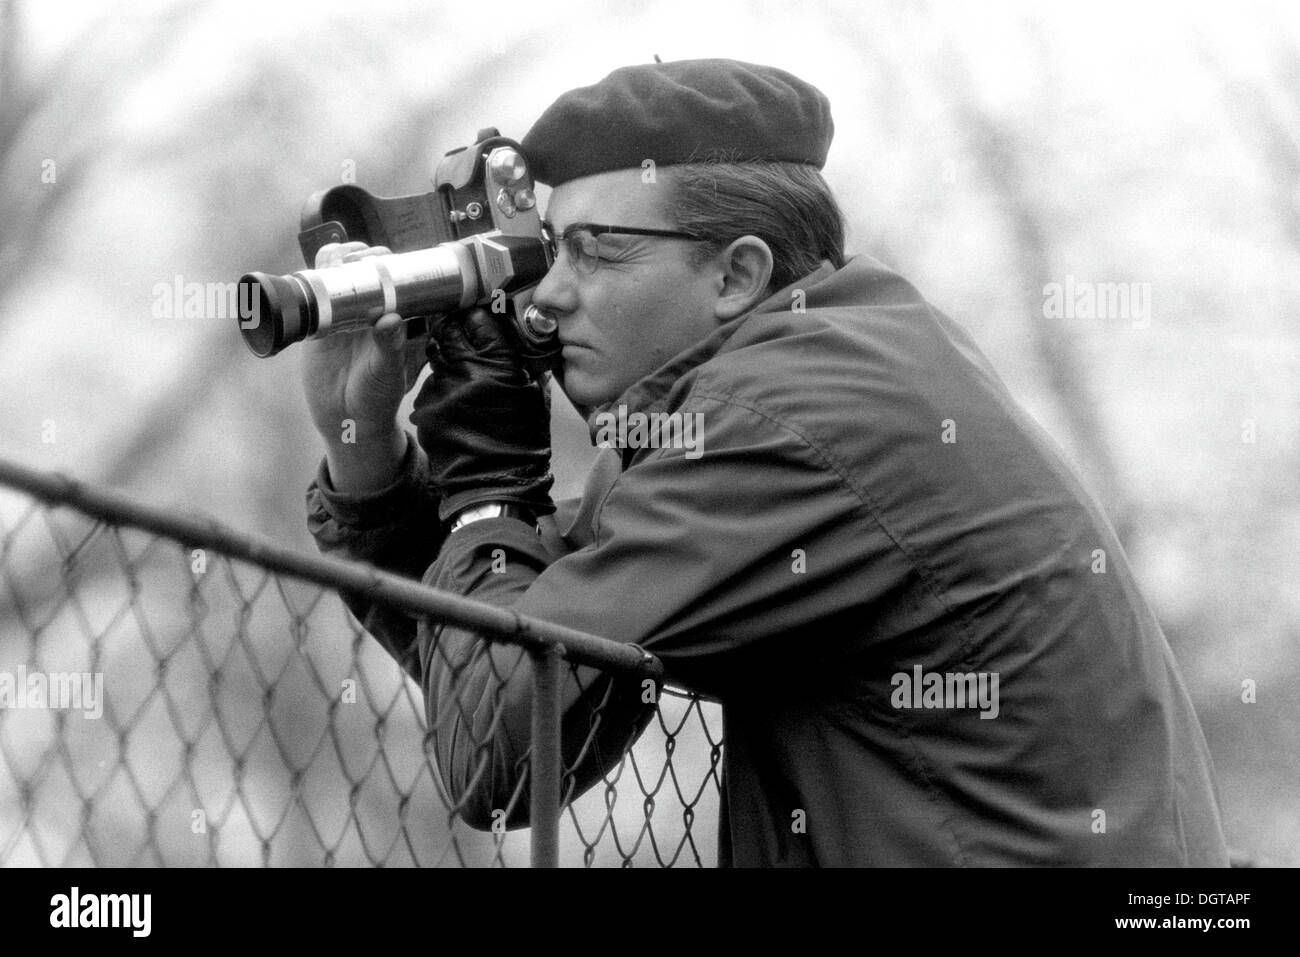 Jeune homme pour prendre des photos avec un appareil photo, vers 1968, Leipzig, RDA, République démocratique allemande, l'Europe Banque D'Images